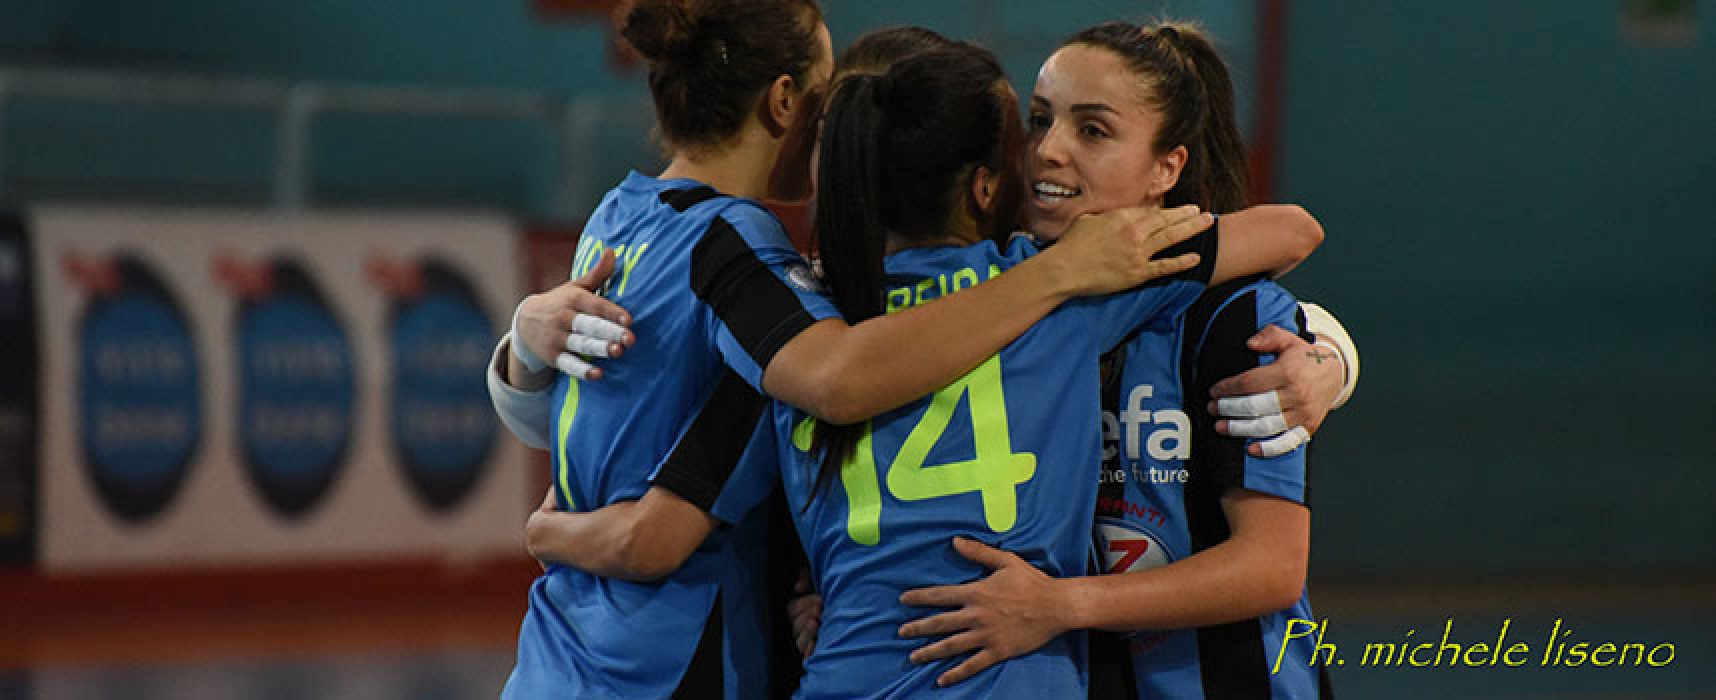 Bisceglie Femminile vince e stacca il pass Coppa Italia